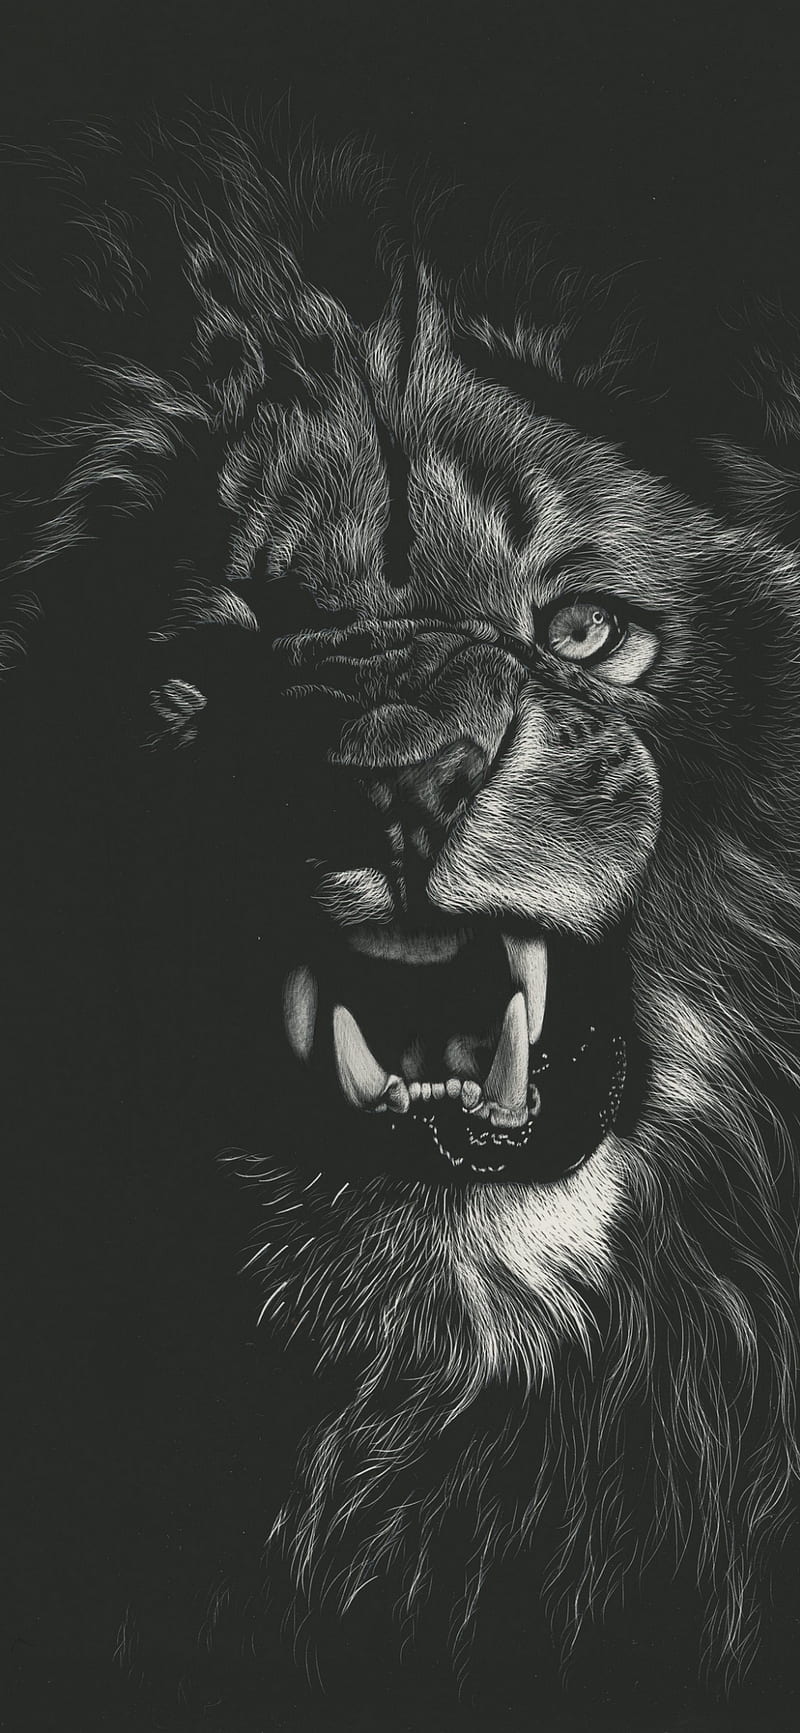 hd lion roar wallpapers 1080p